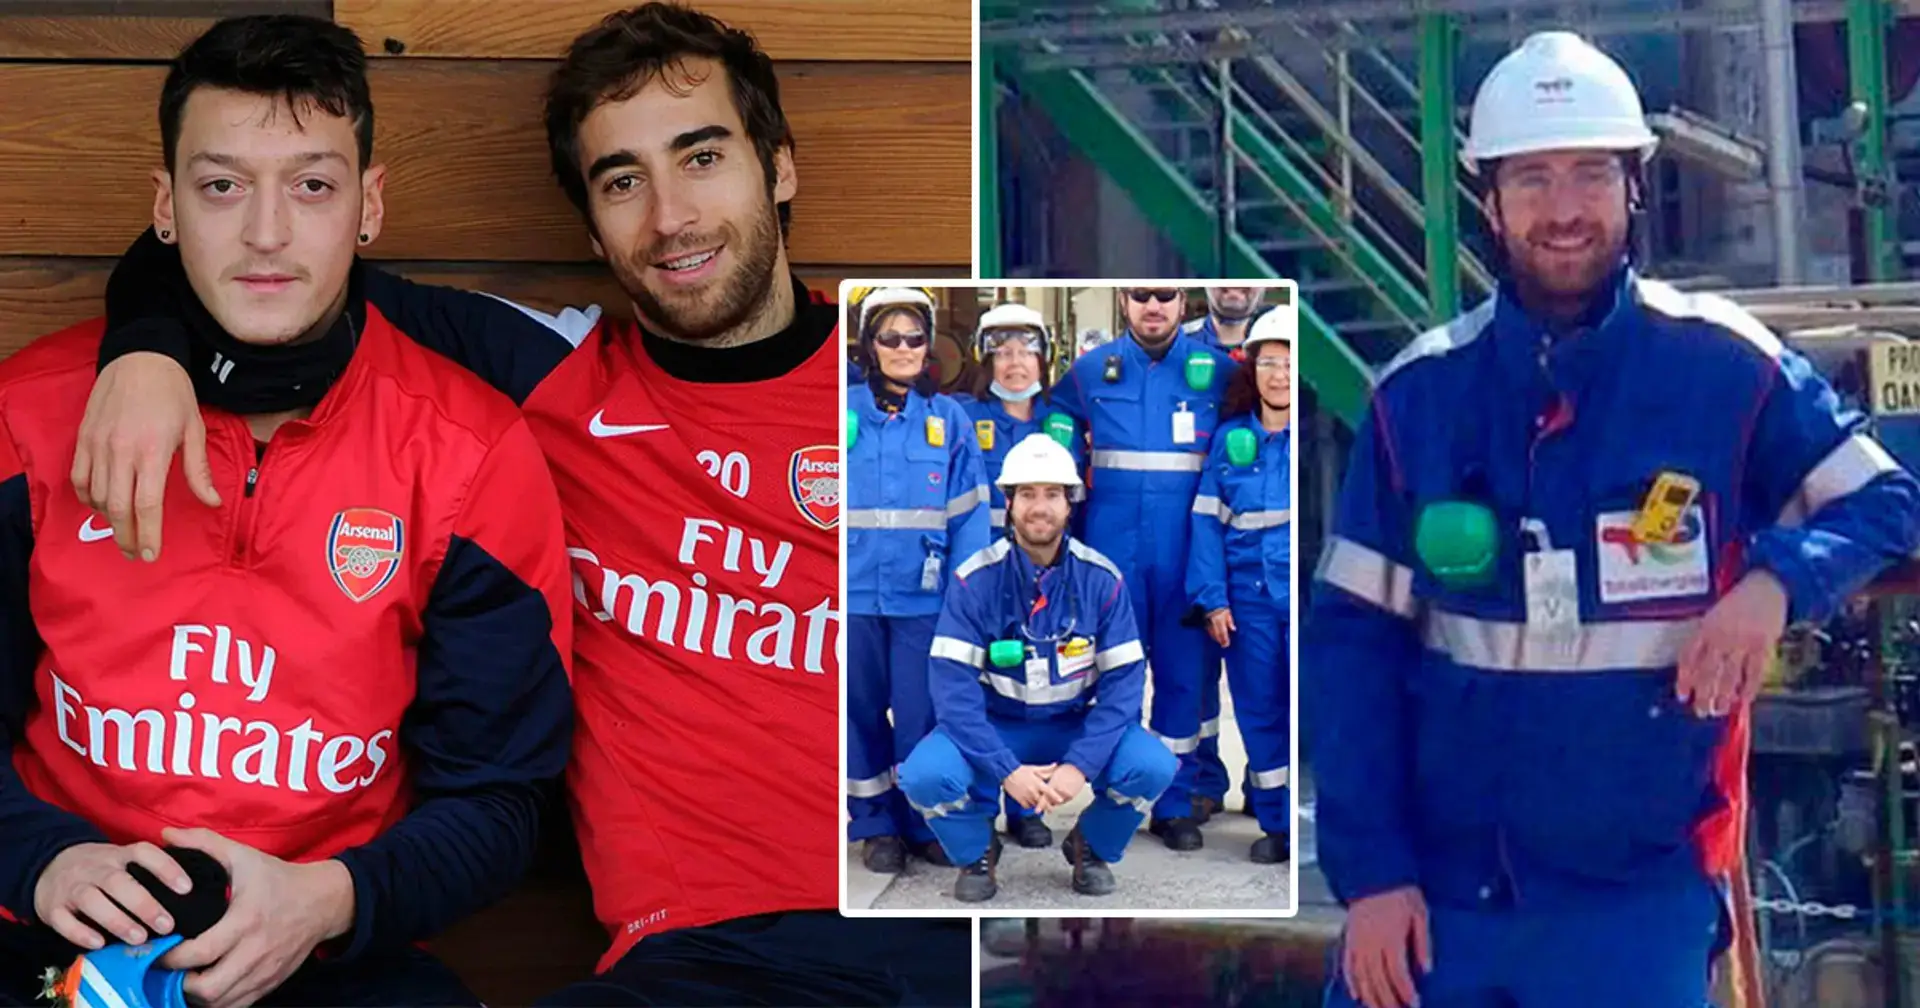 El ex jugador del Arsenal, Mathieu Flamini, posa con su nueva fábrica que podría generar miles de millones